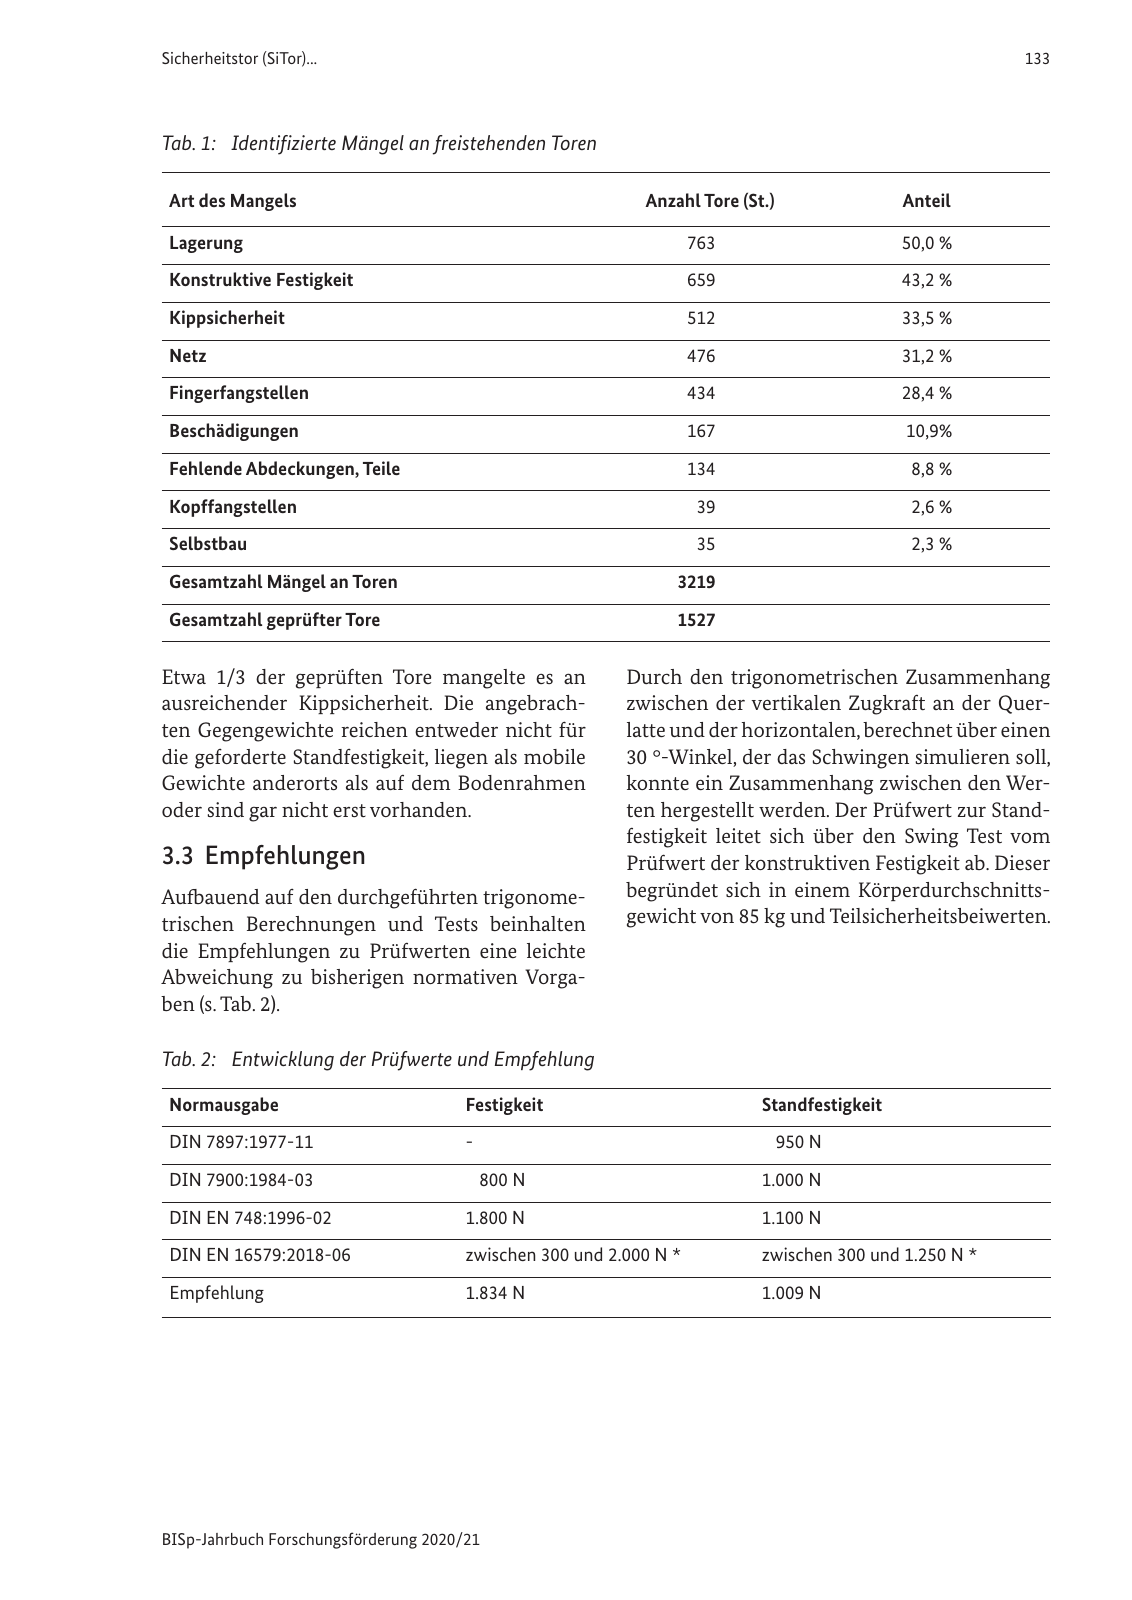 Vorschau BISp-Jahrbuch 2020/21 Seite 135